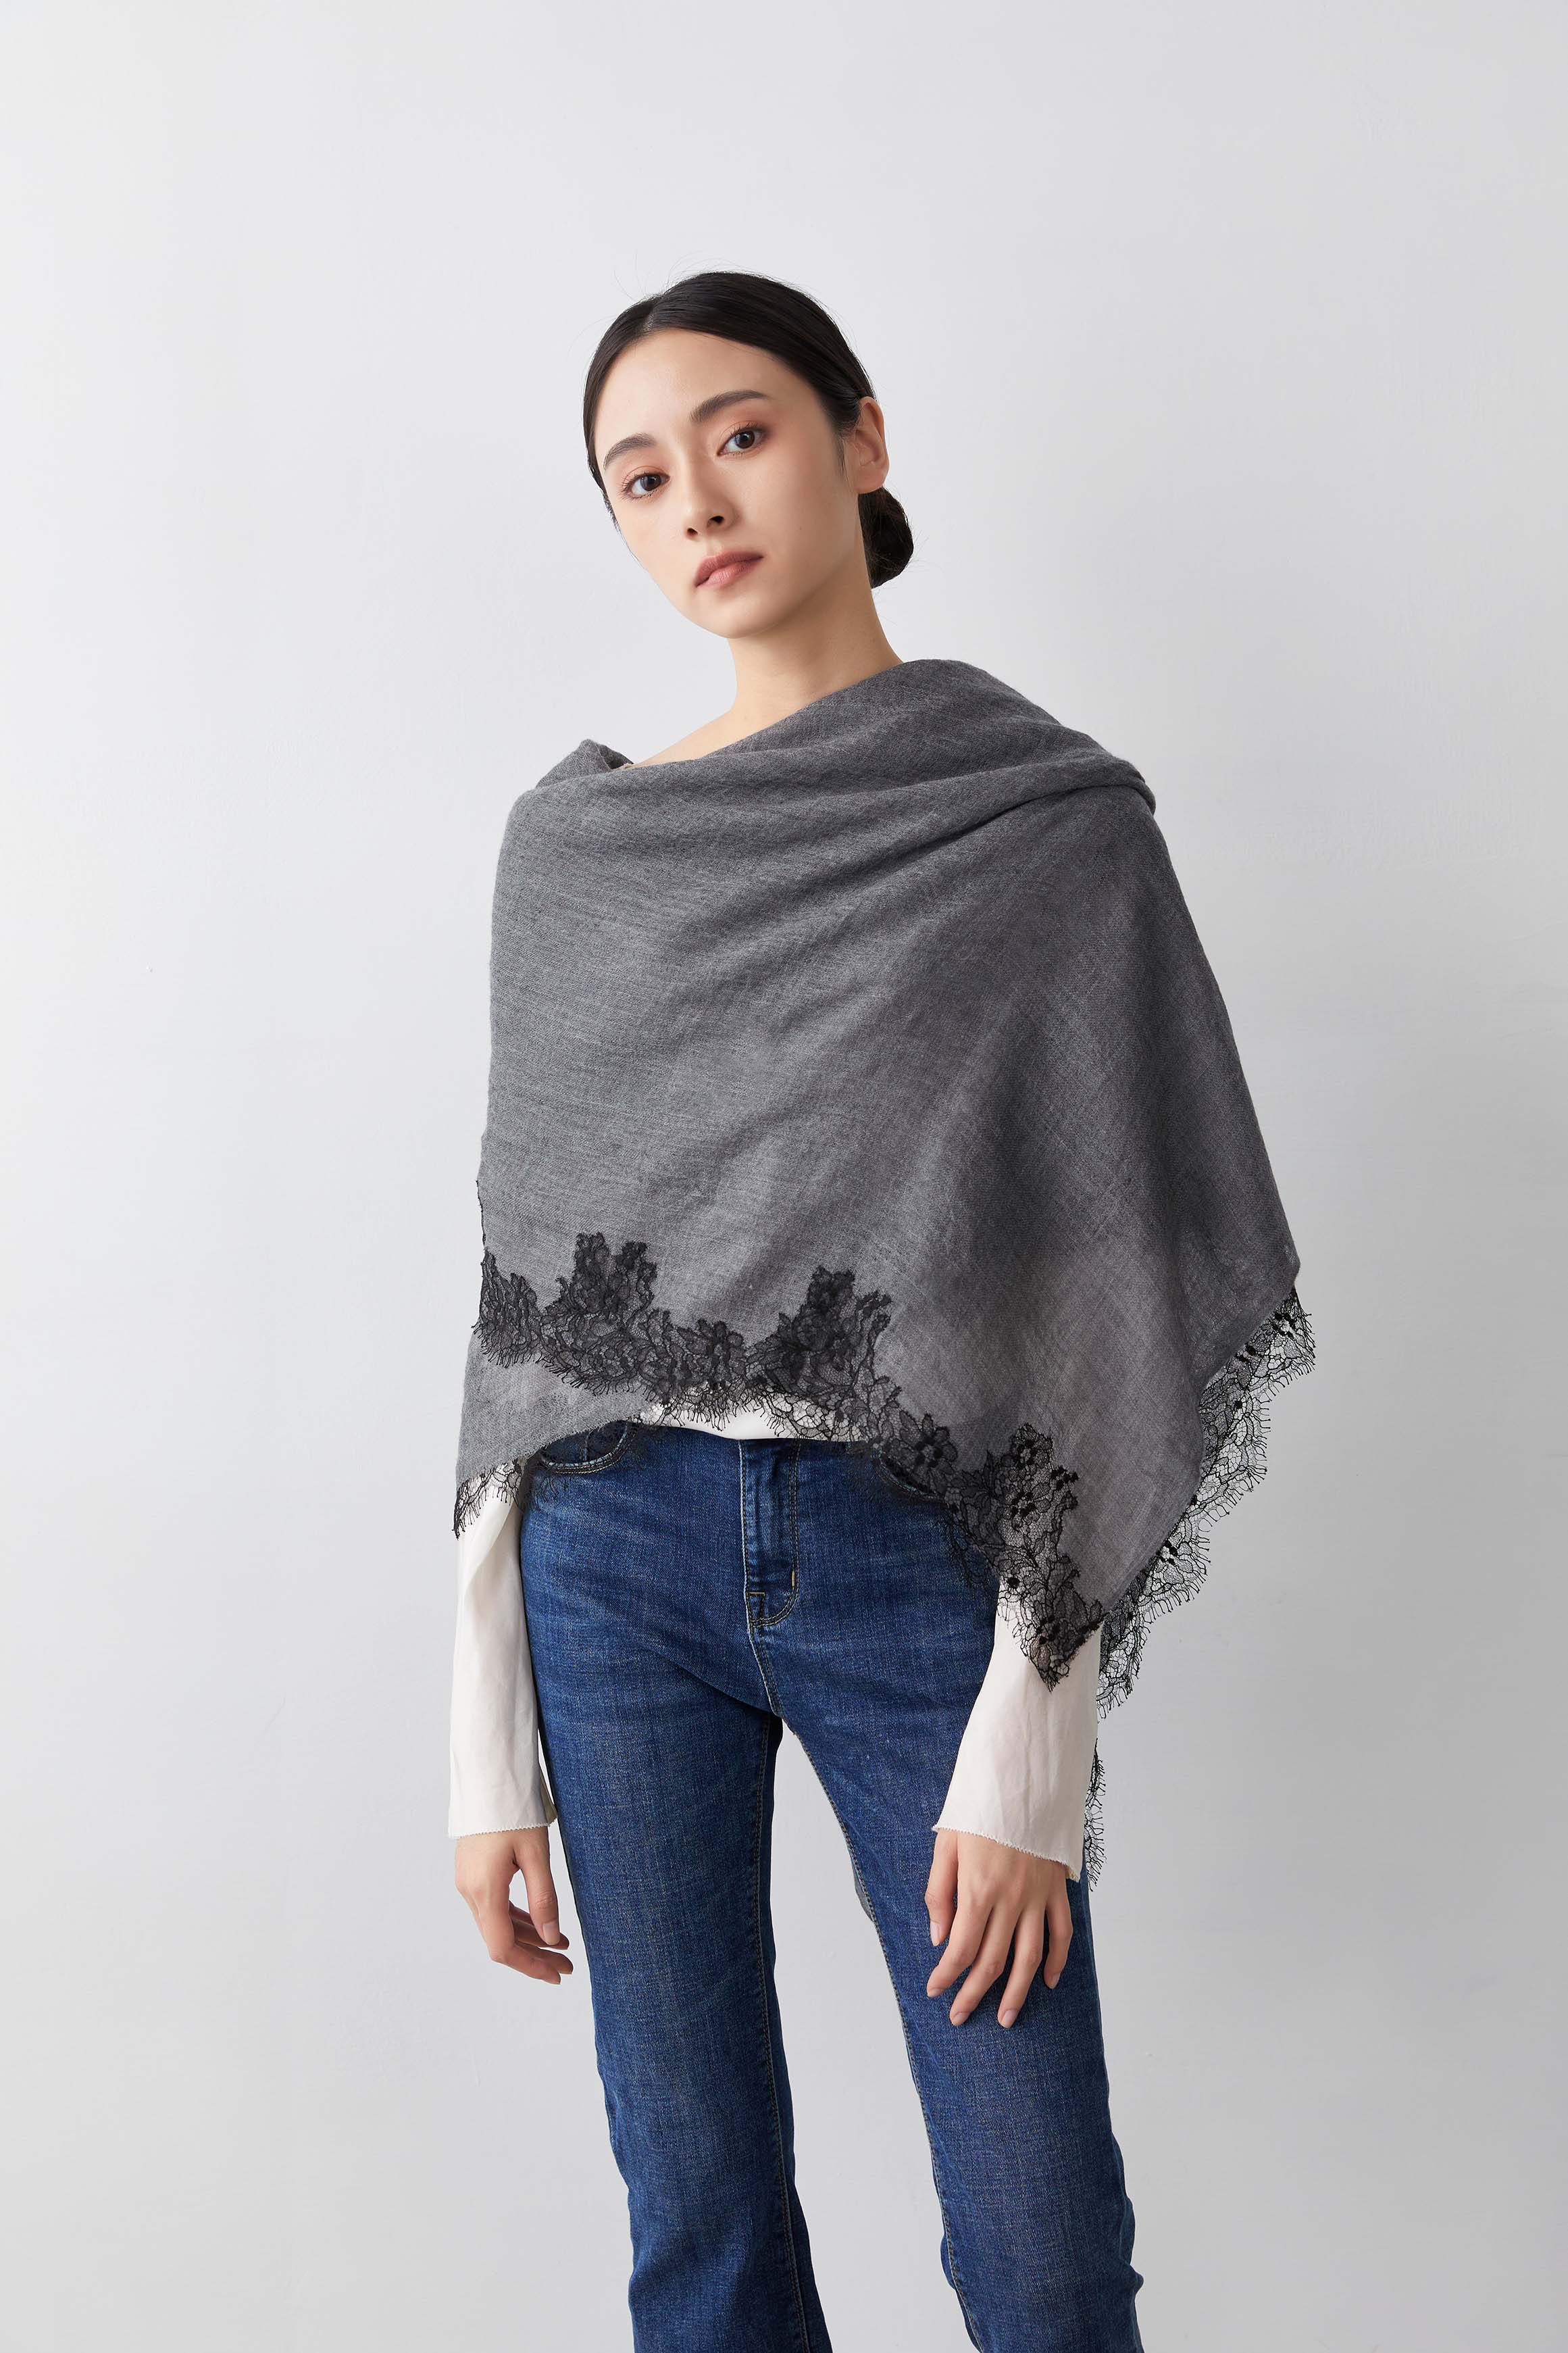 【0222直播】French Lace 100% Cashmere 圍巾